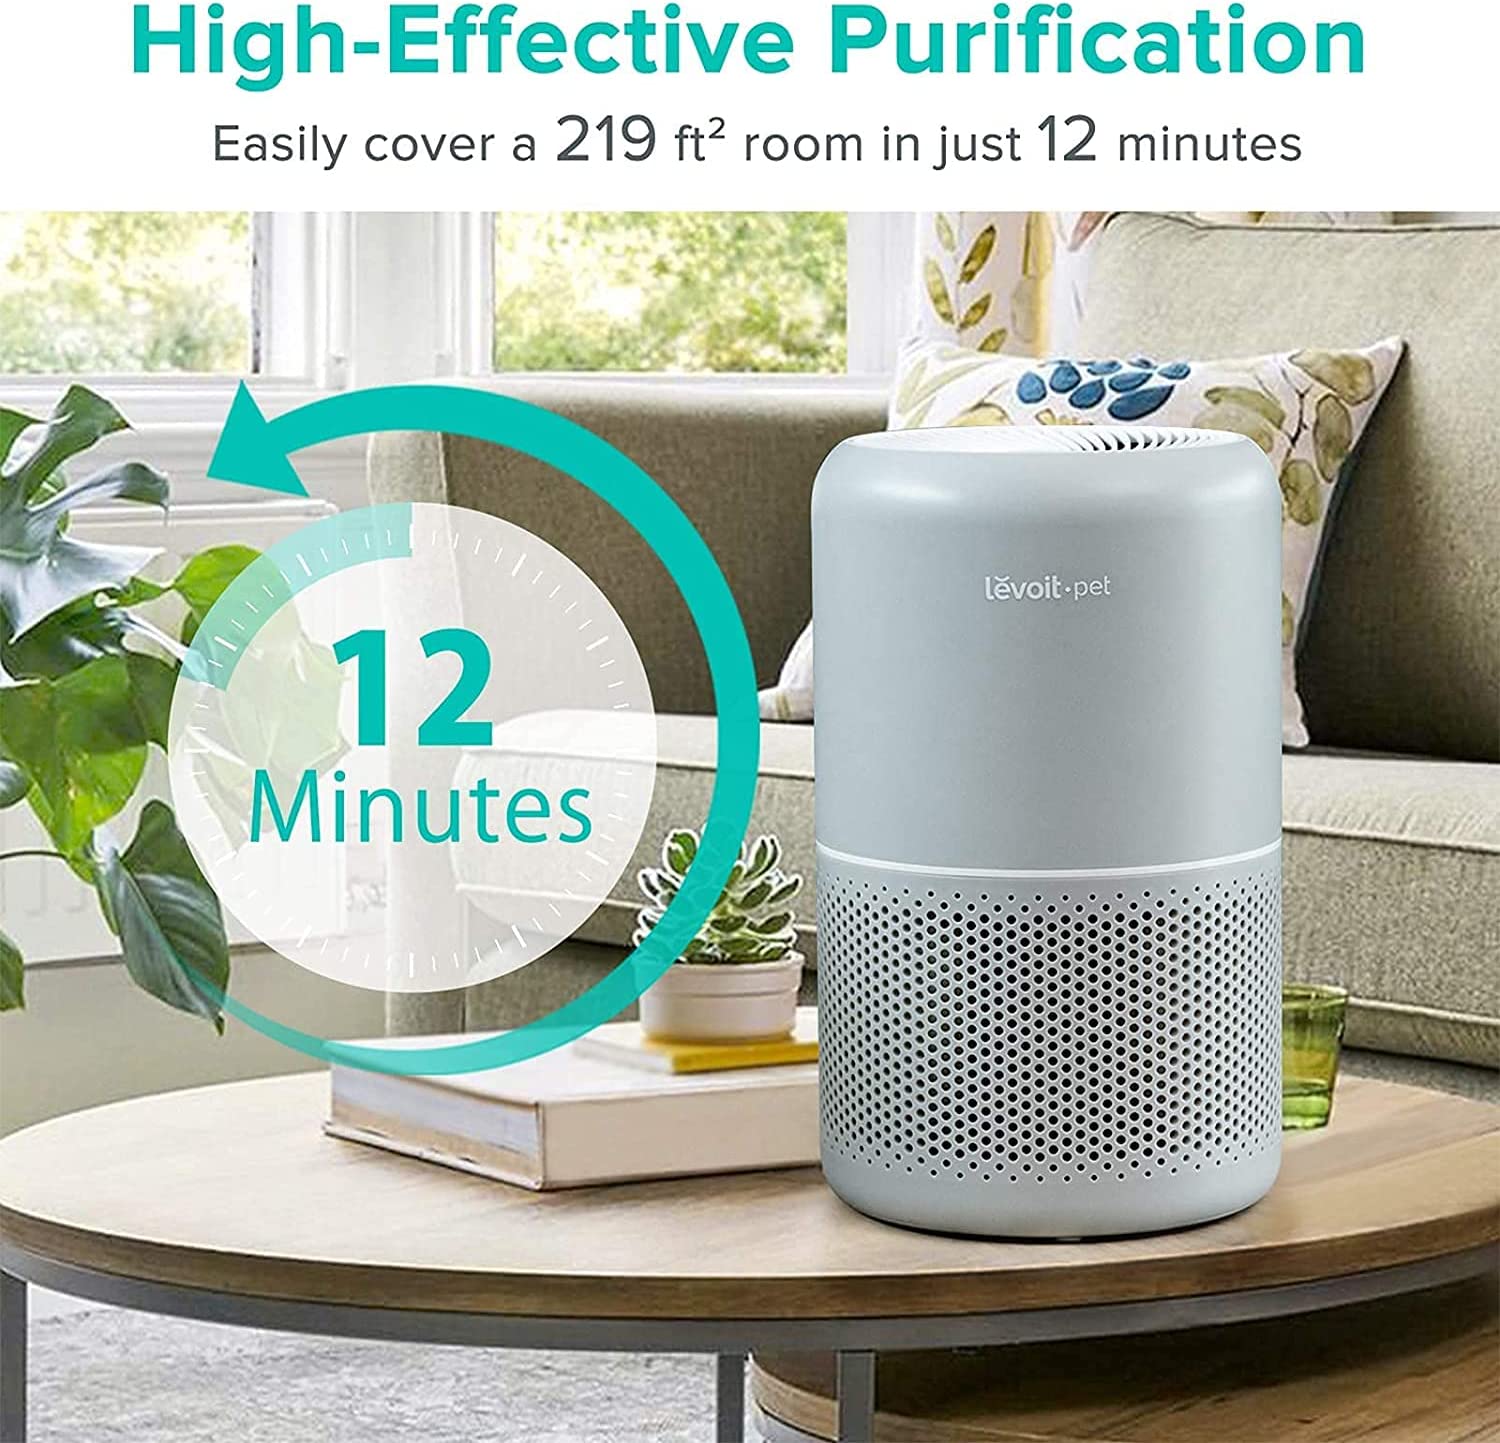 دستگاه تصفیه هوا Levoit Air Purifiers for Home Allergies and Pet Hair - ارسال 10 الی 15 روز کاری